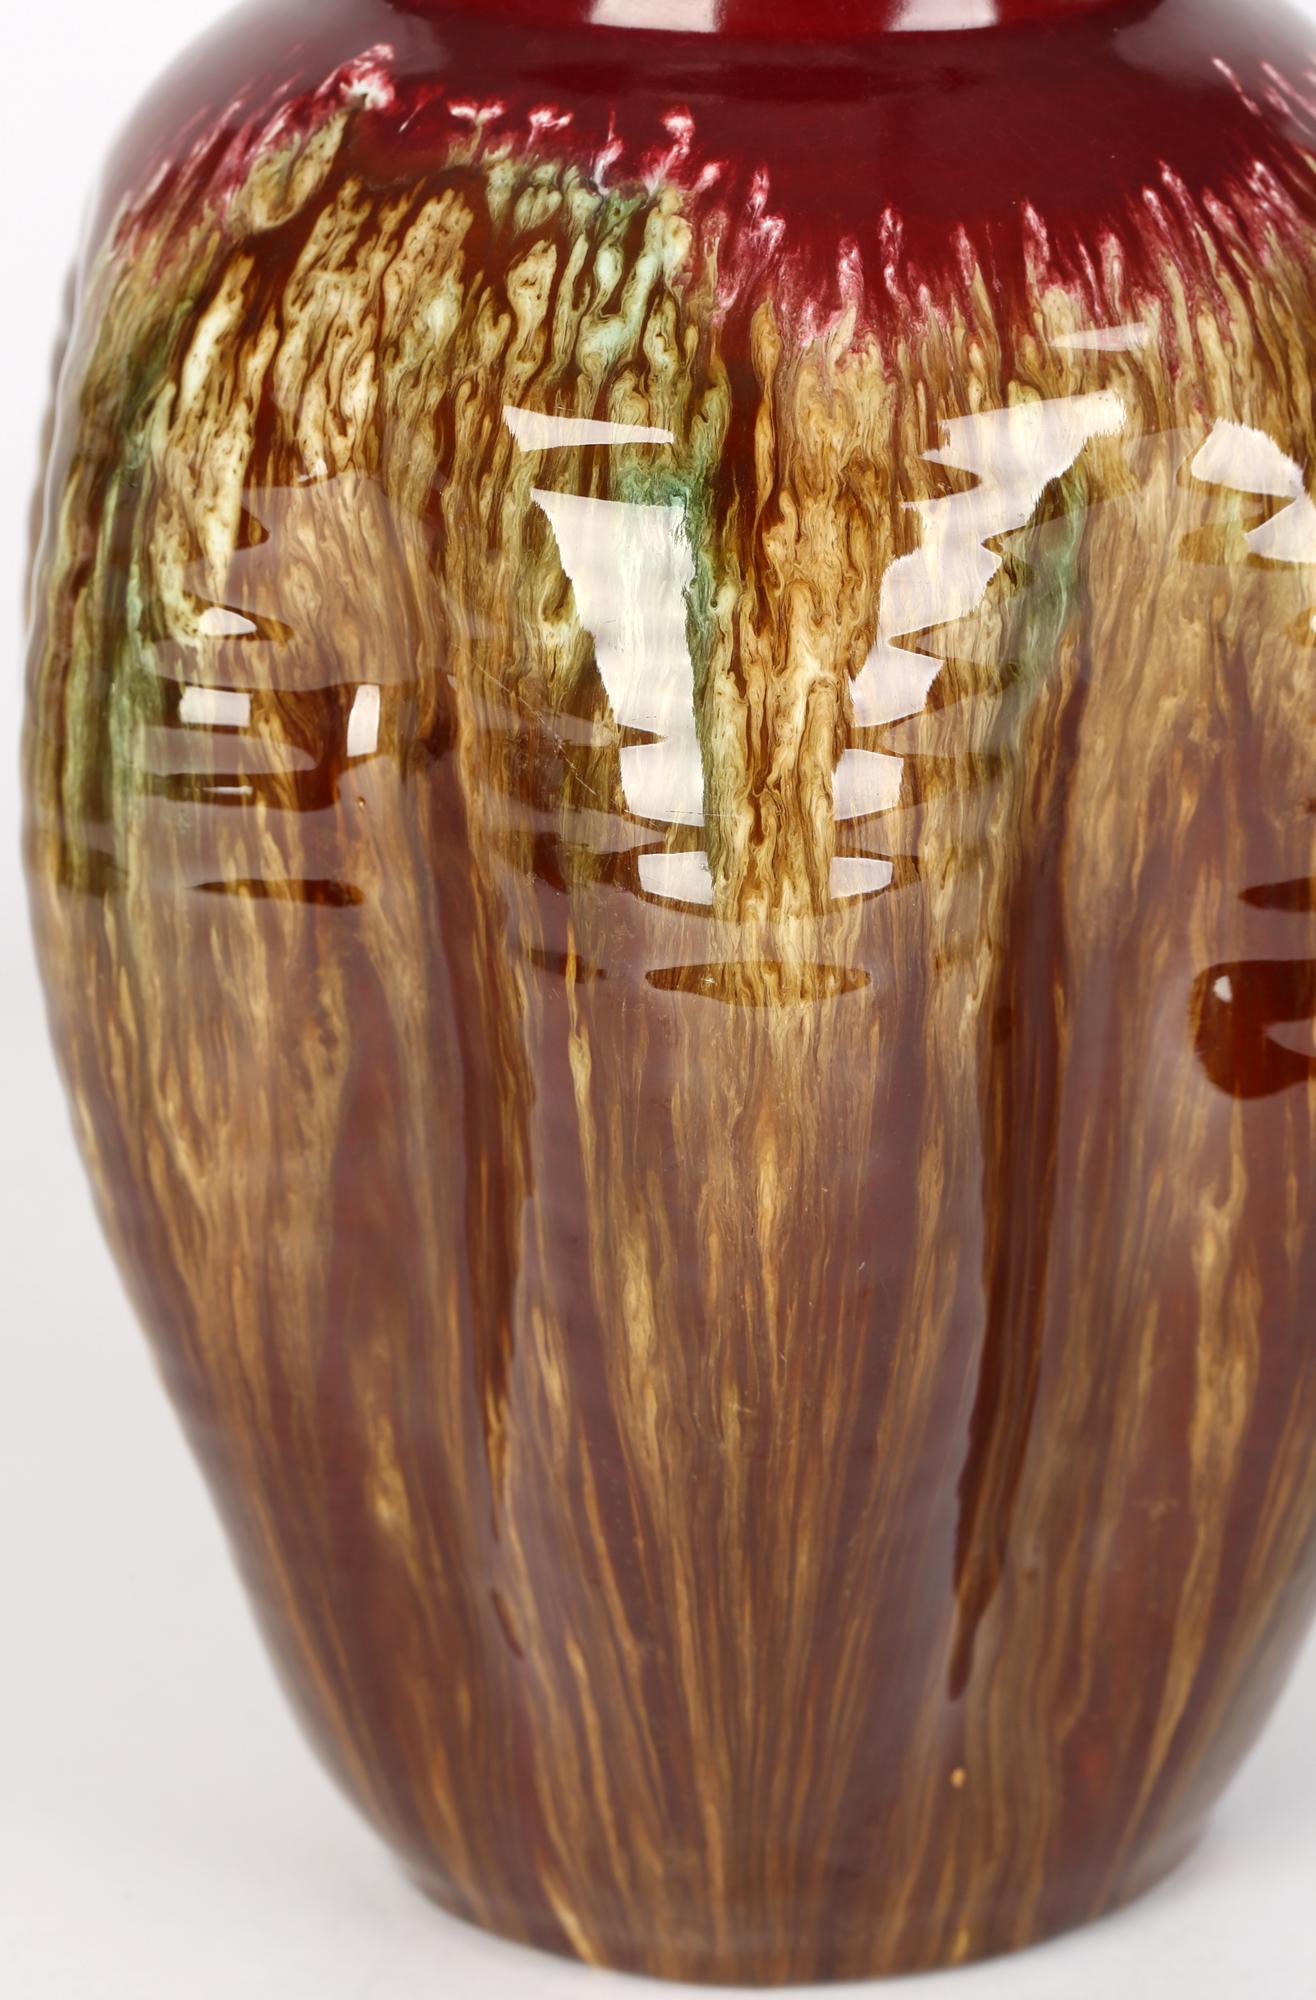 Eine stilvolle Linthorpe-Vase mit Tropfglasur, die Christopher Dresser (Brite, 1834-1904) zugeschrieben wird und die um 1885 entstand. Die rote, handgedrehte Vase aus Steingut steht auf einem schmalen, runden Fuß mit einem abgerundeten, bauchigen